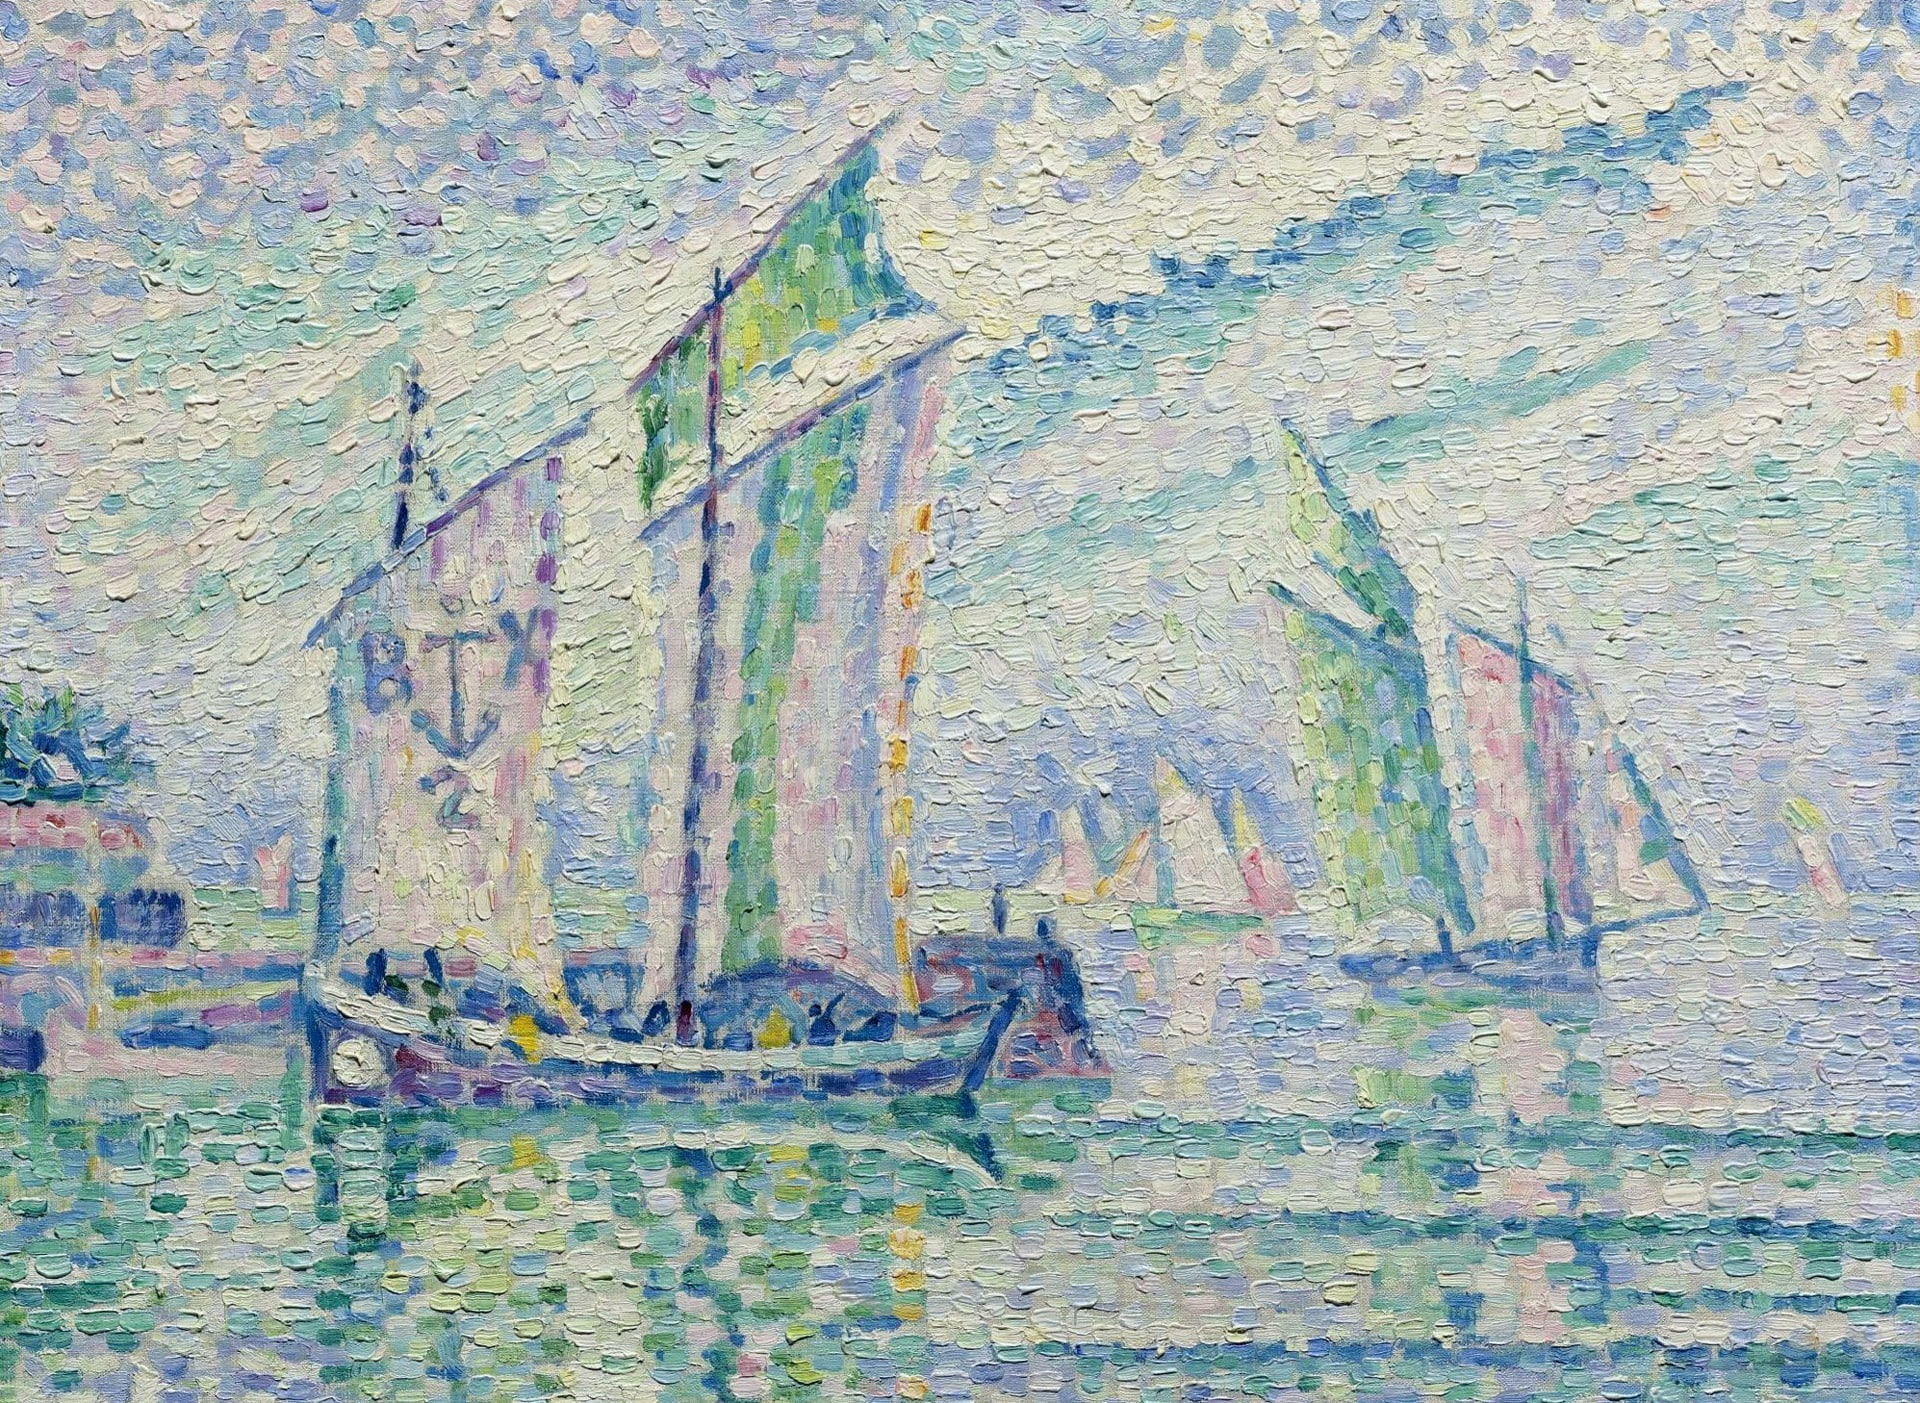 boat, picture, sail, seascape, Paul Signac, pointillism, Canal La Rochelle